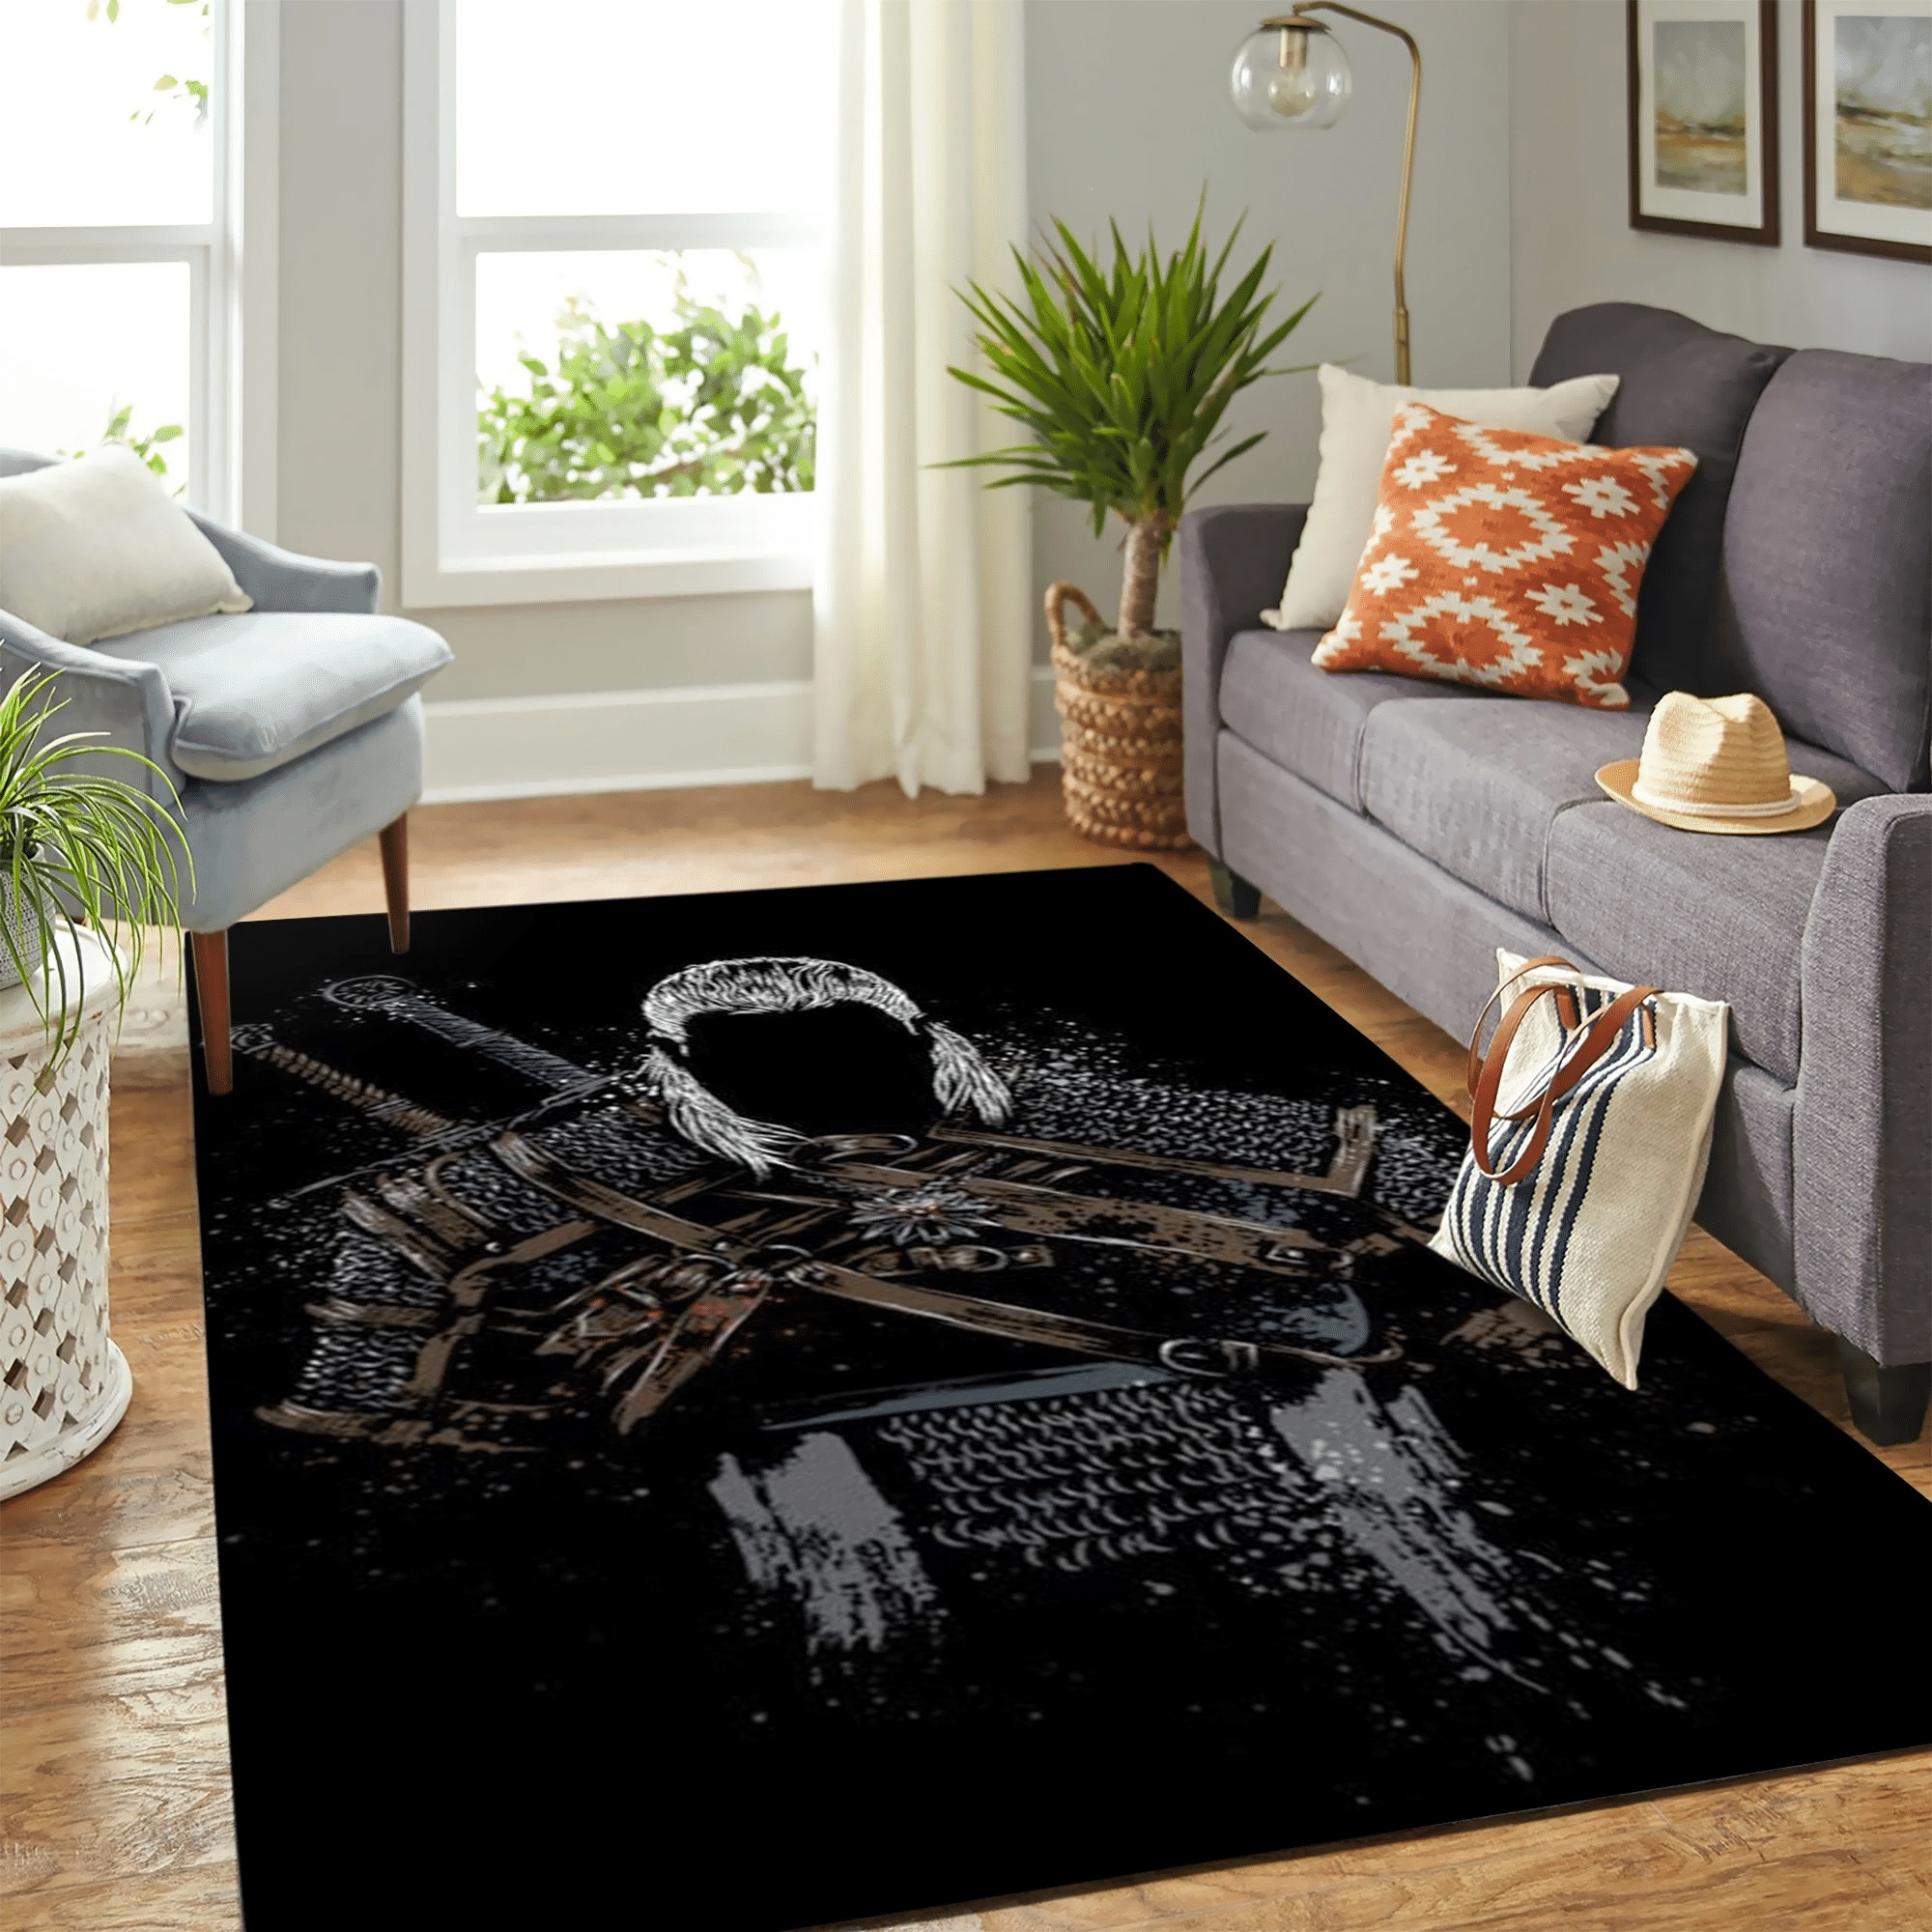 The Witcher Badass Carpet Floor Area Rug Chrismas Gift - Indoor Outdoor Rugs